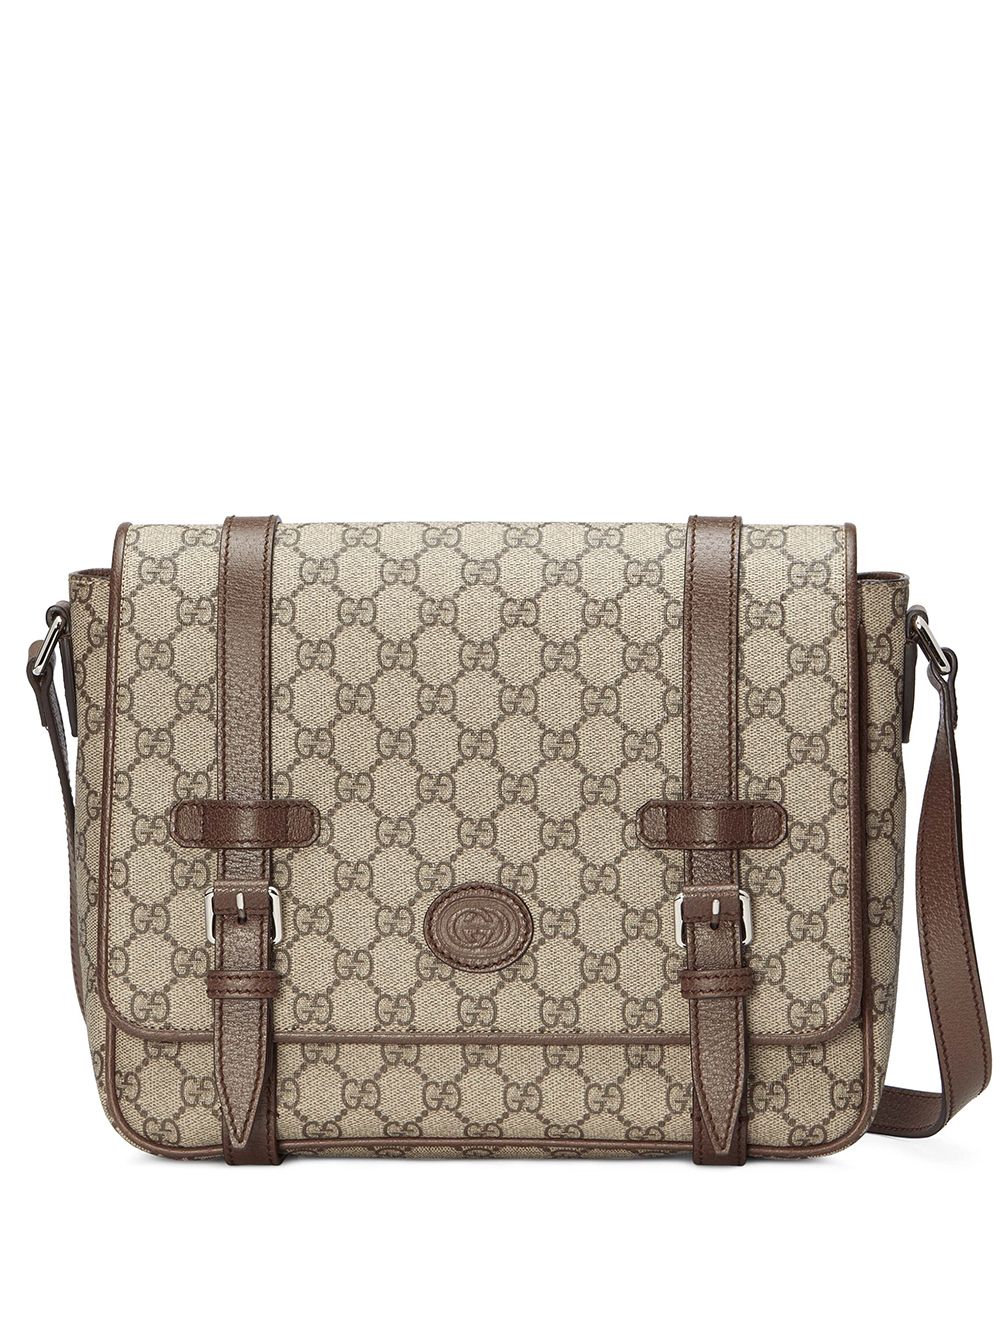 Image 1 of Gucci GG Supreme messenger bag